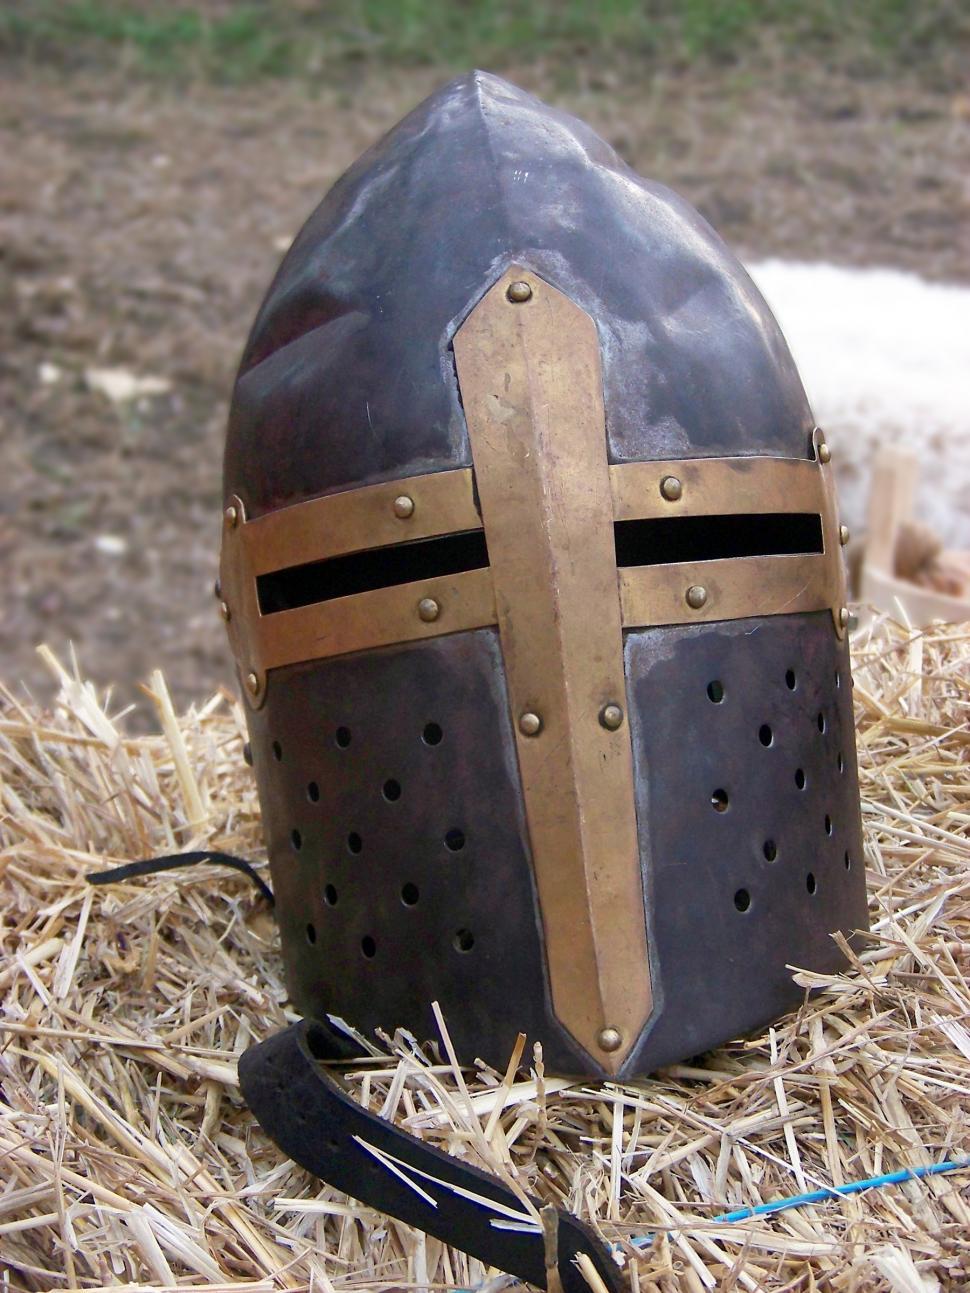 Free Image of Crusader helmet  